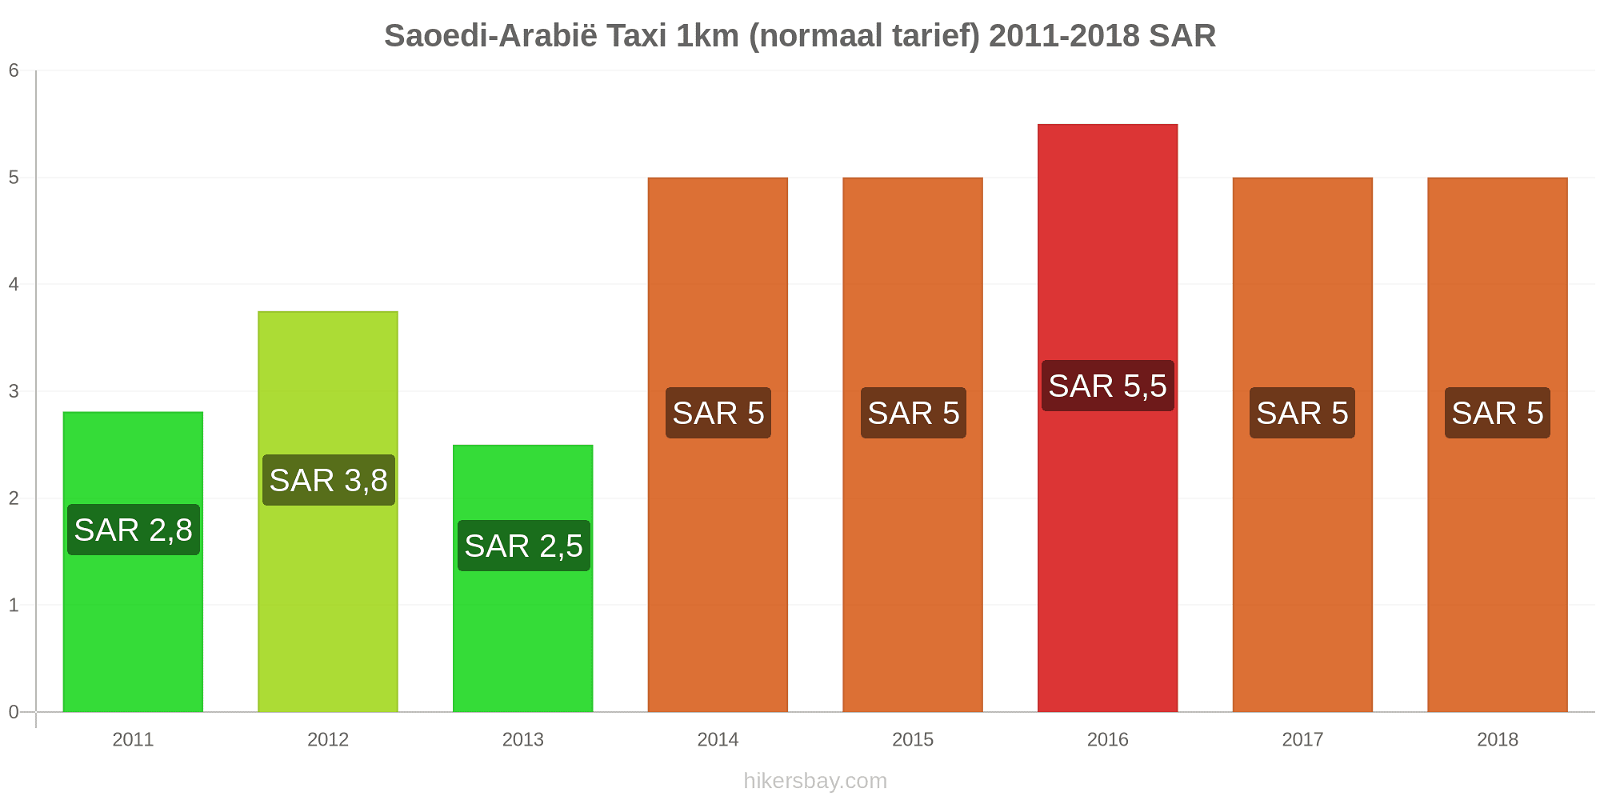 Saoedi-Arabië prijswijzigingen Taxi 1km (normaal tarief) hikersbay.com